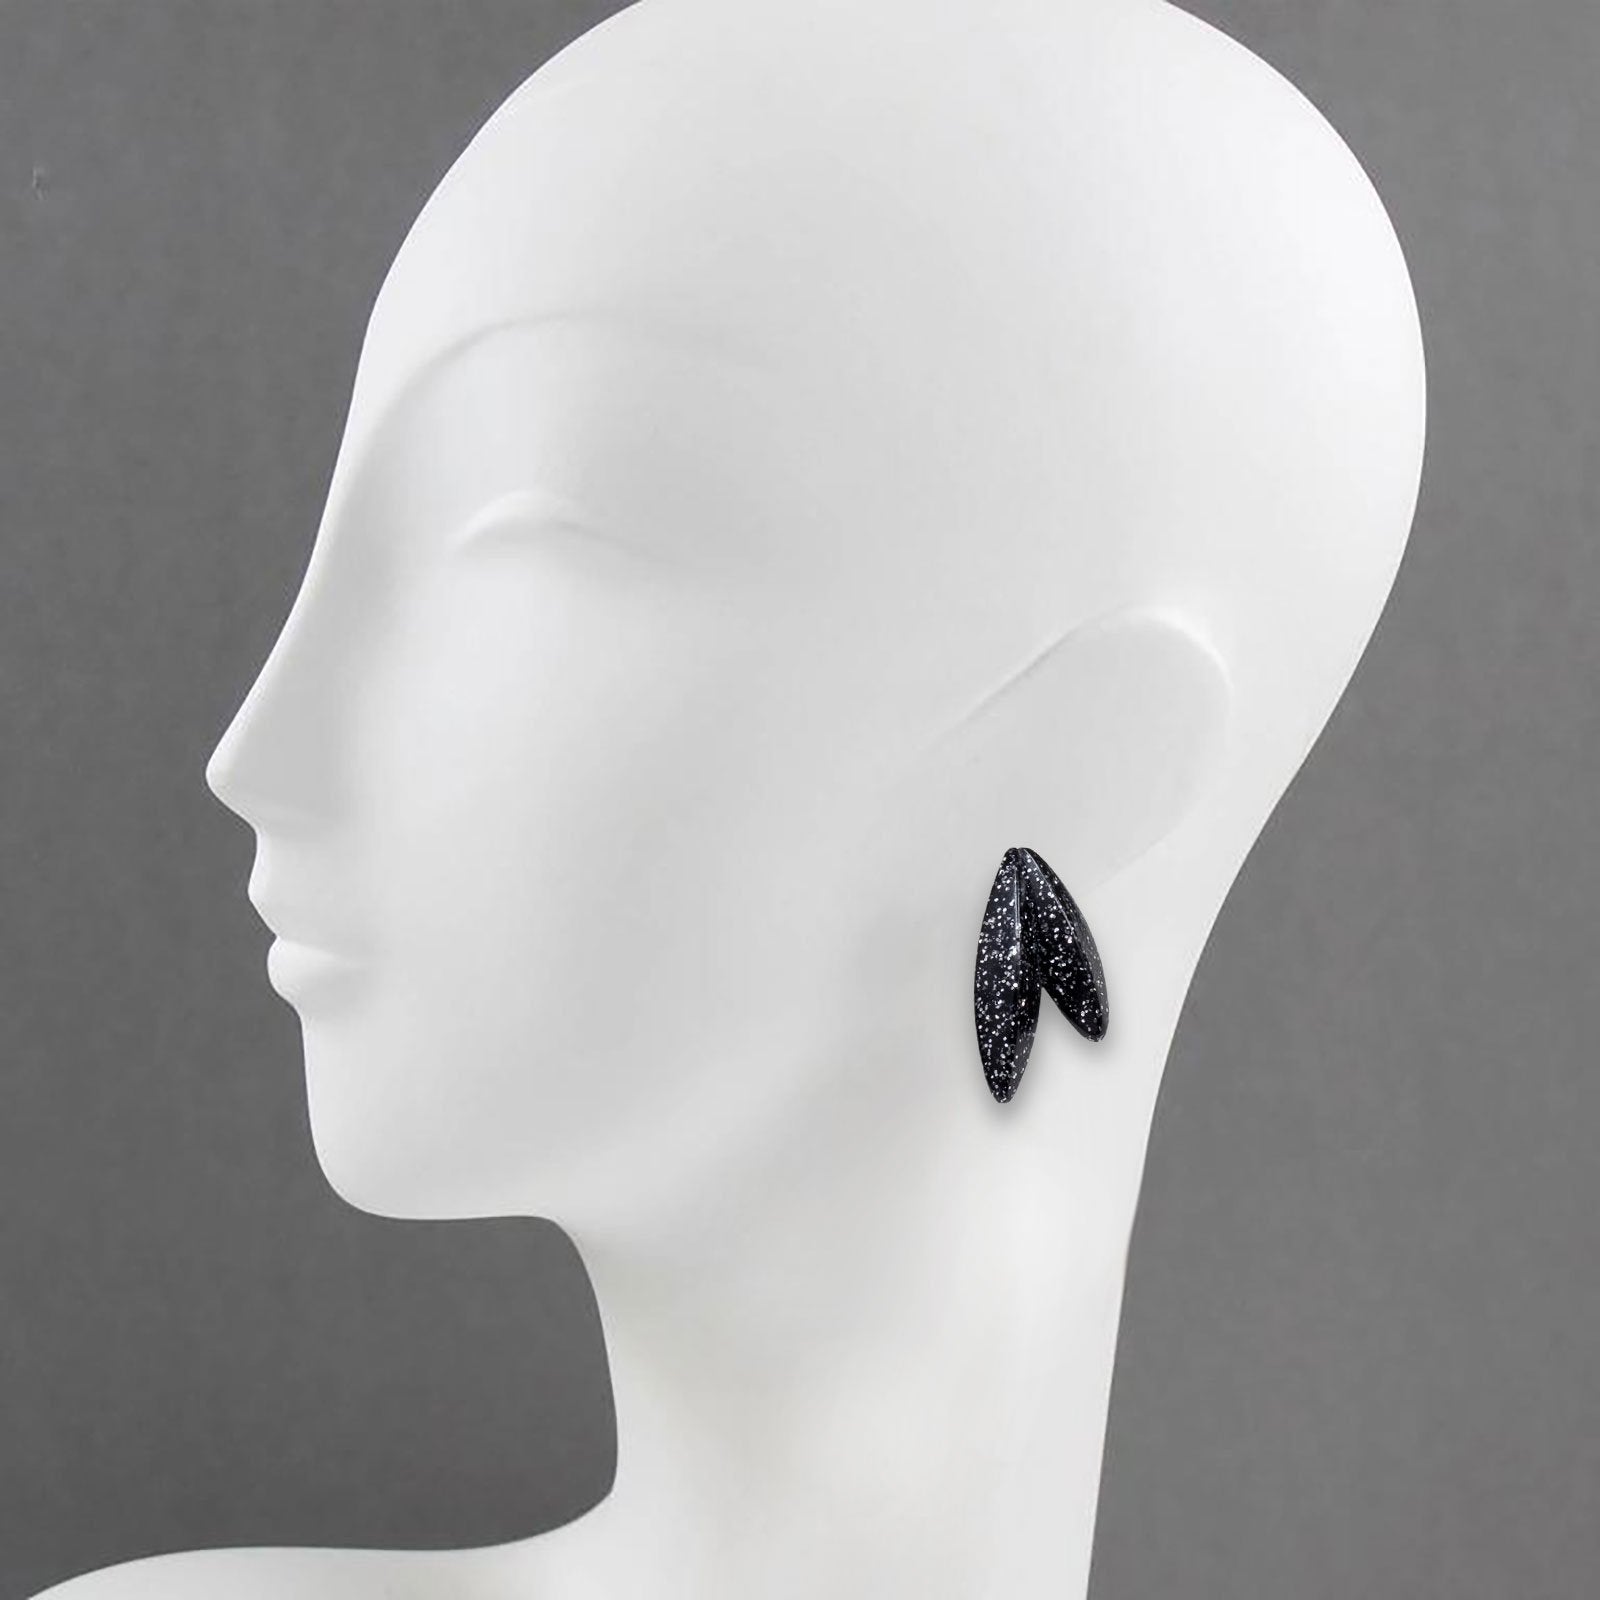 Twin-LEAVES ✕ Shine earrings, black silver